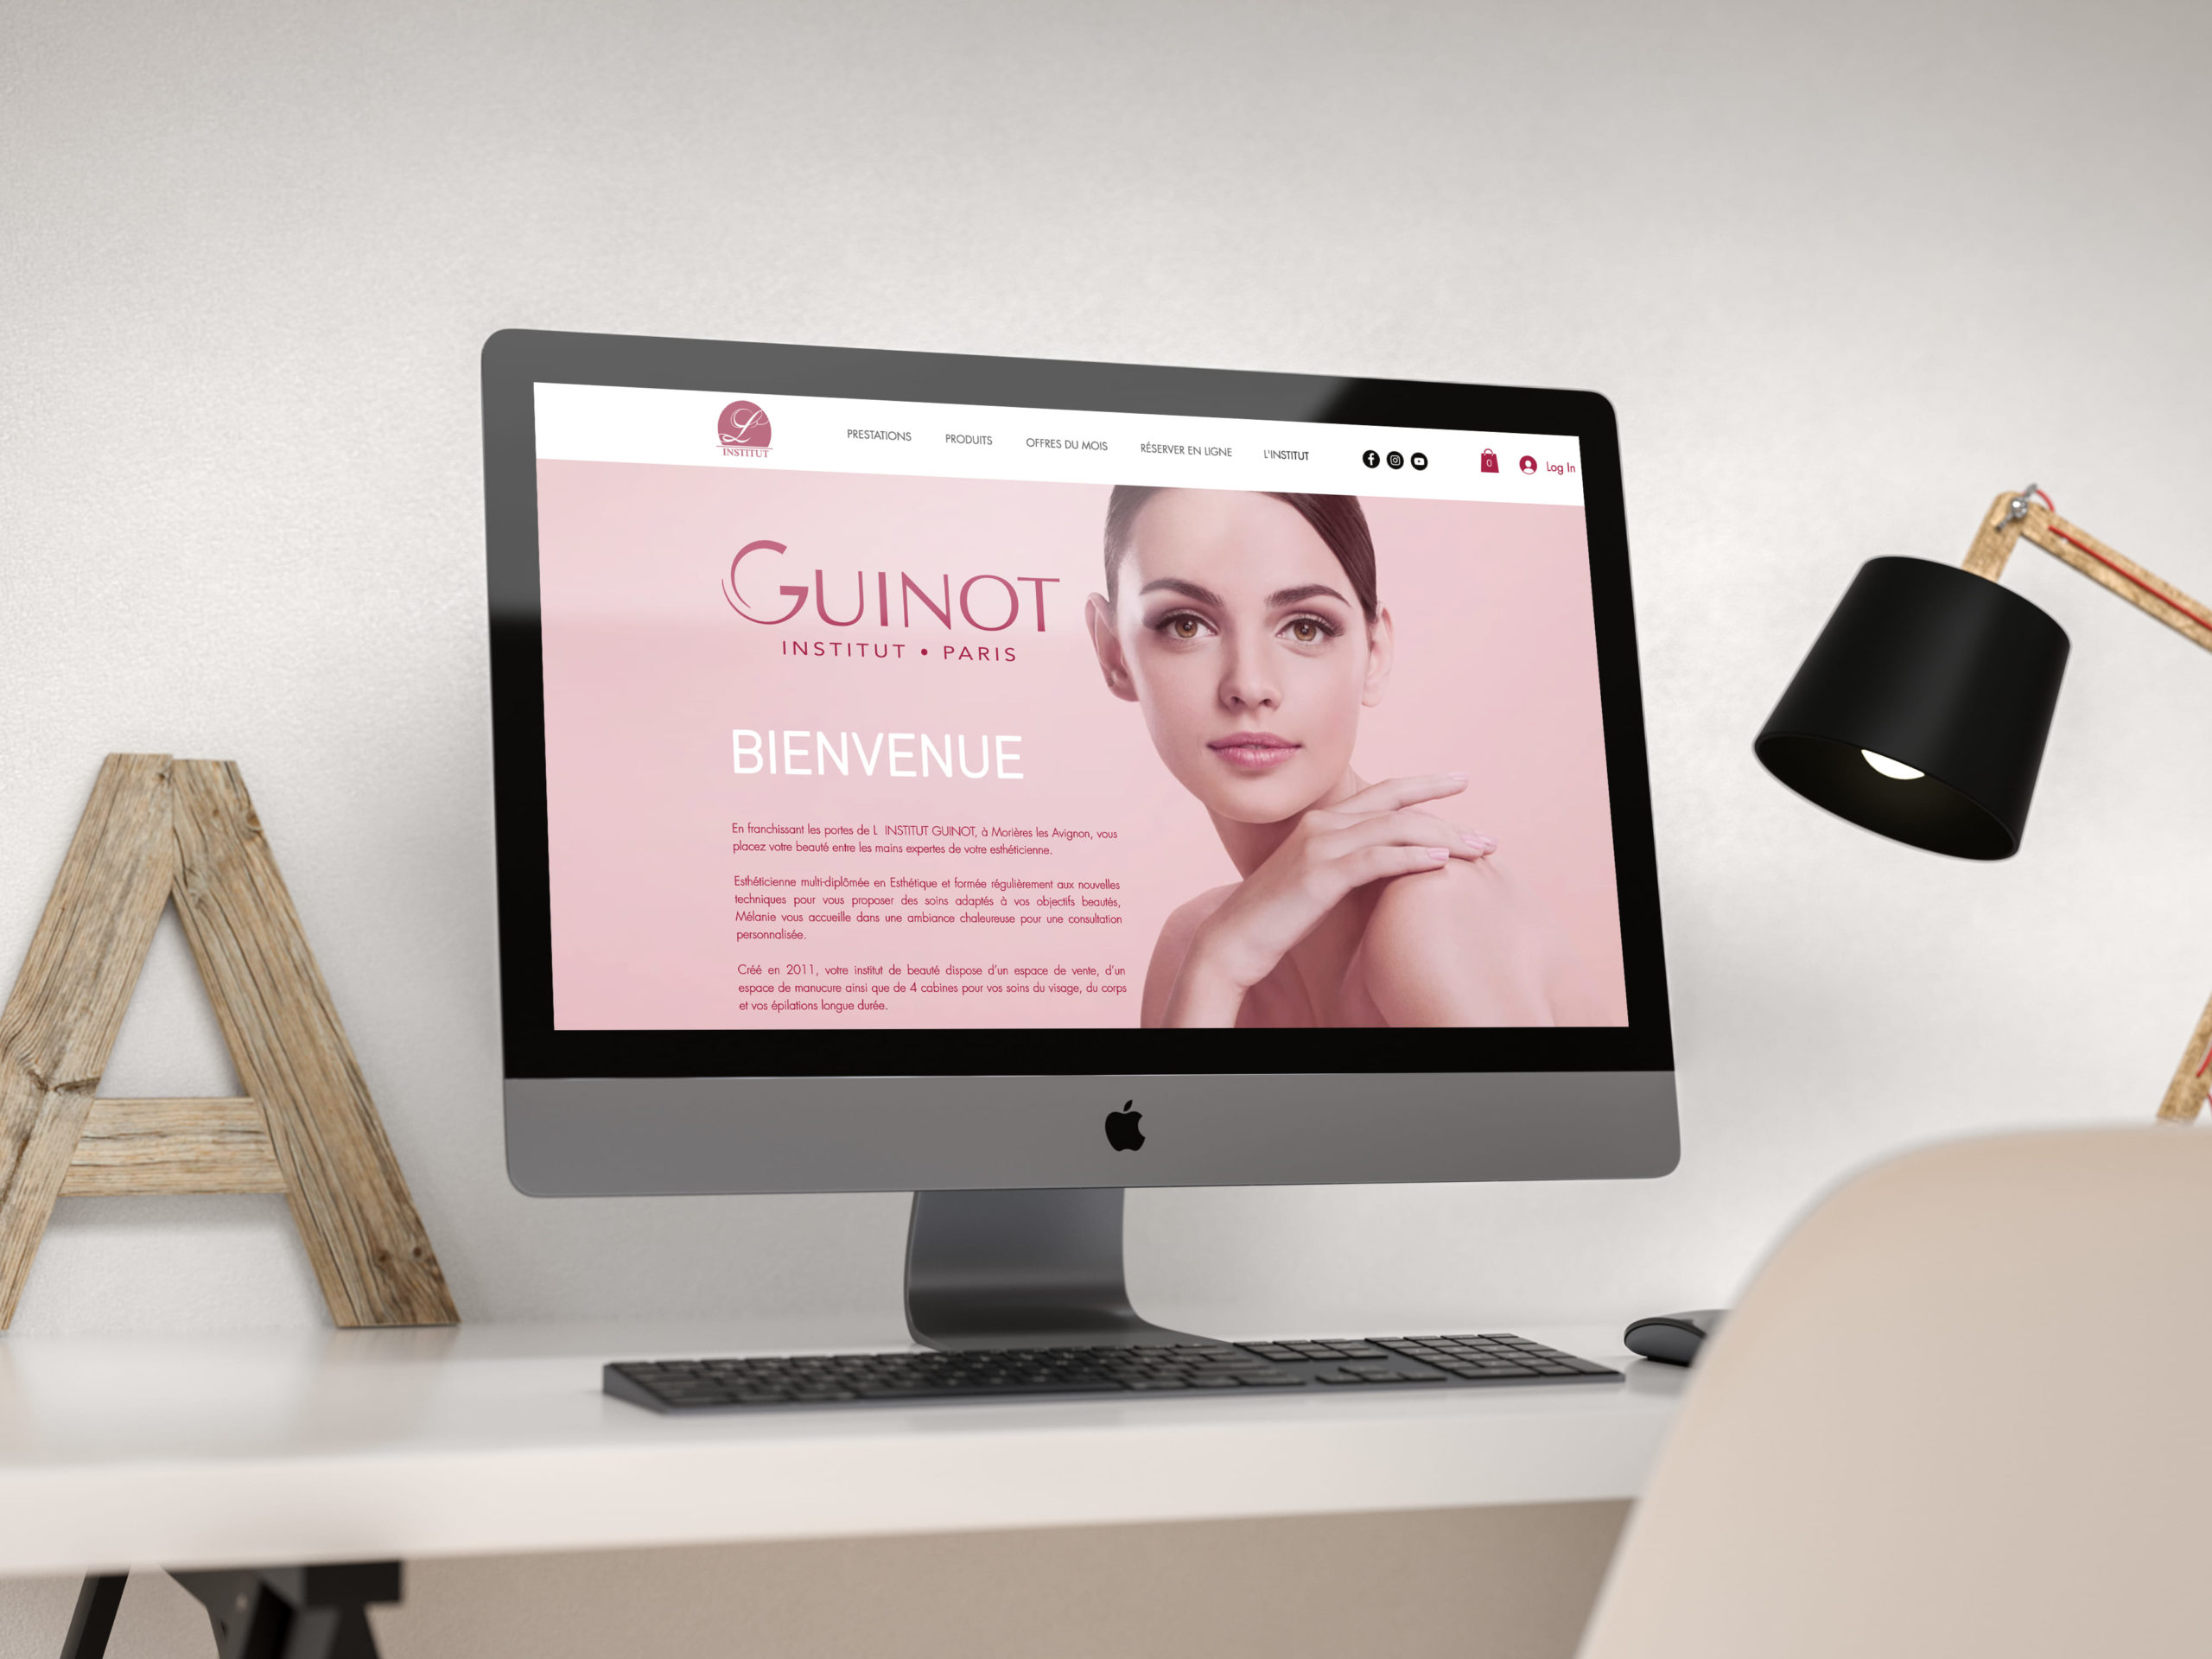 iMac posé sur un bureau et allumé avec la page internet du site de l'Institut Guinot